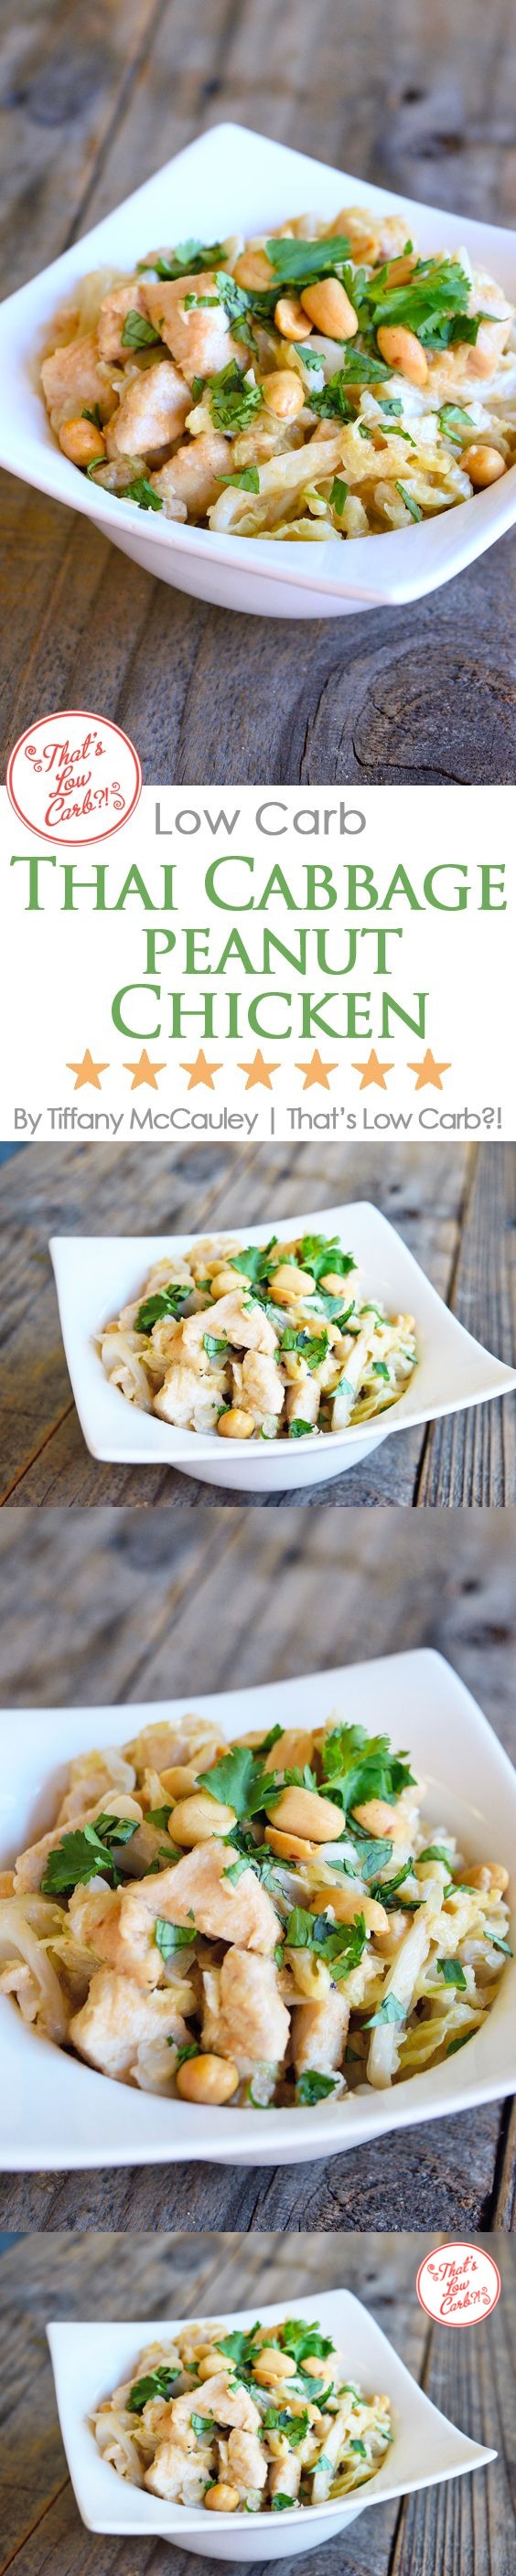 Low Carb Thai Peanut Chicken & Cabbage Stir Fry